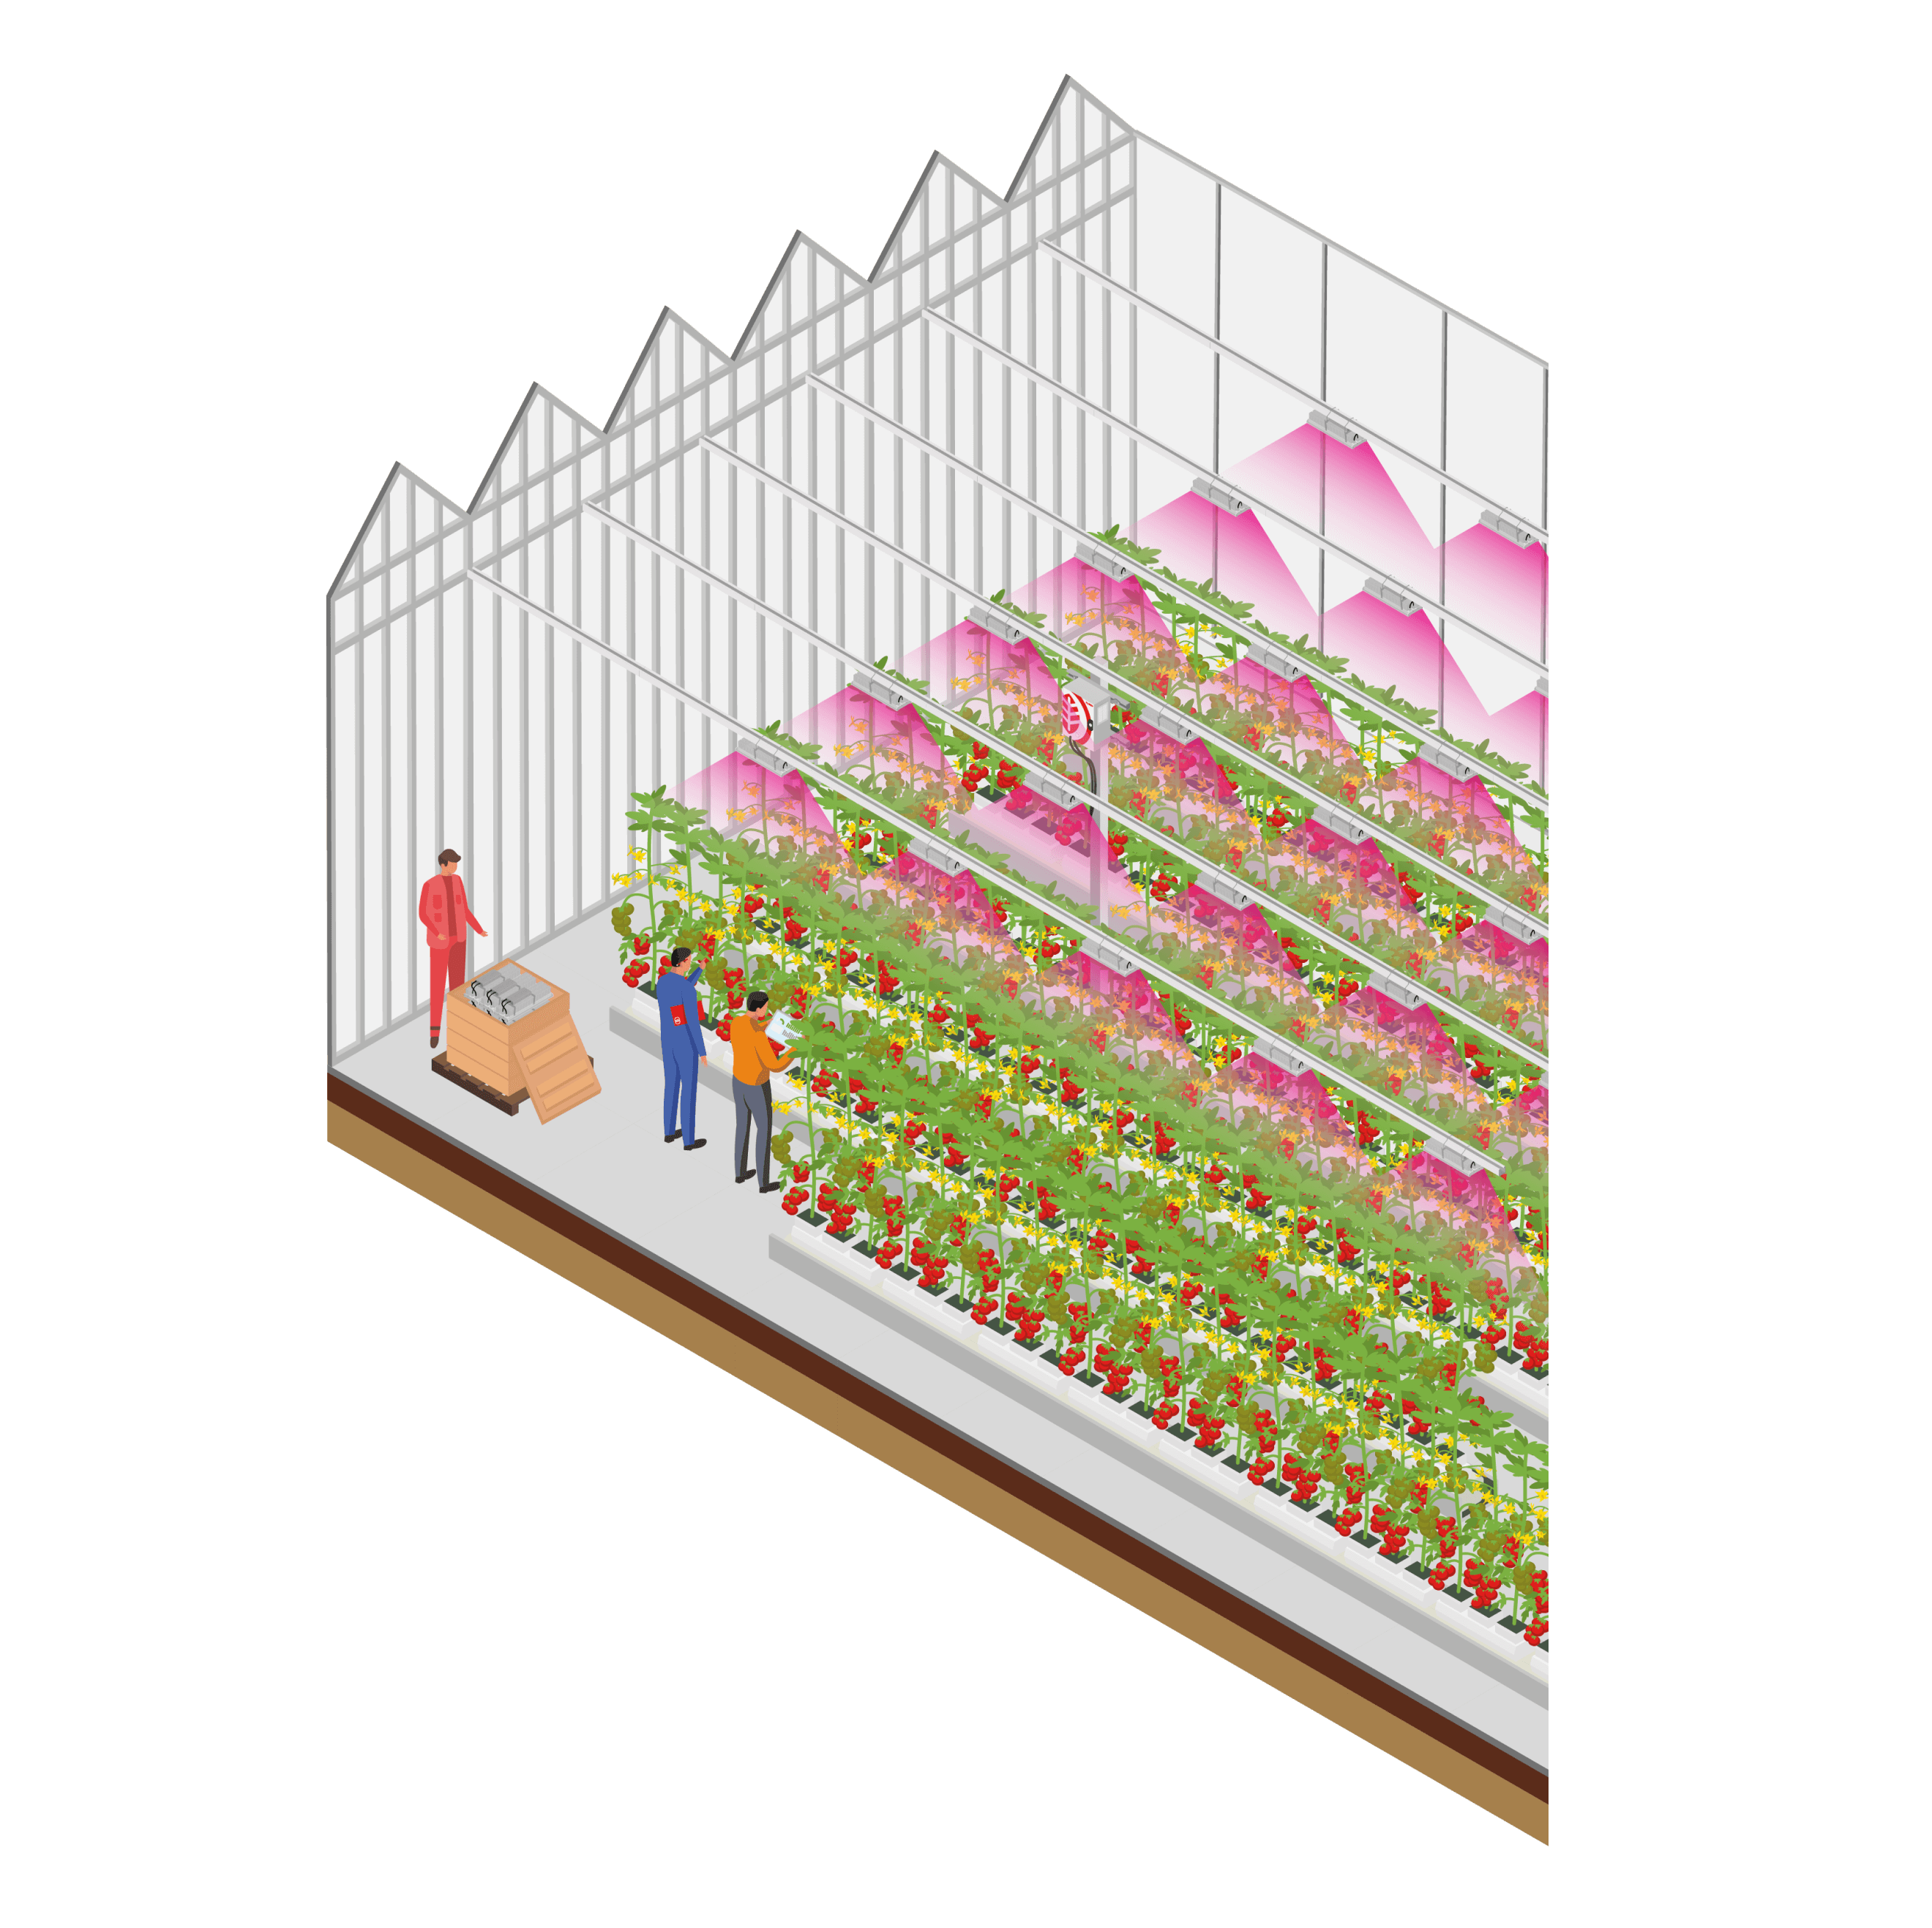 Salle de culture maraichère, illustration pour montrer la mise en place de spectres dynamiques sur plants.